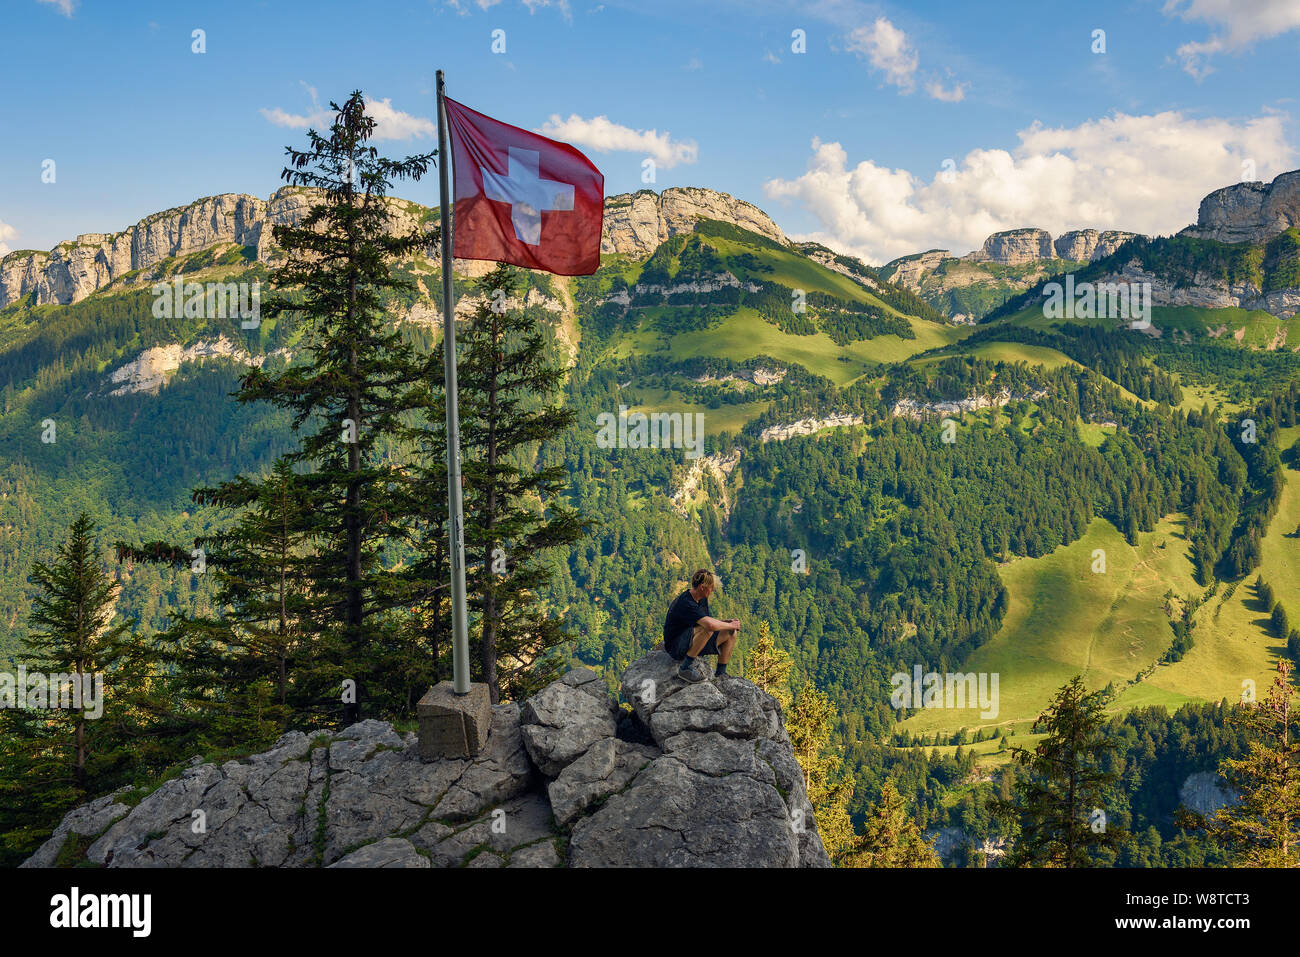 Assis sur le tourisme de montagne Edelweiss dans les Alpes suisses de la Suisse Banque D'Images